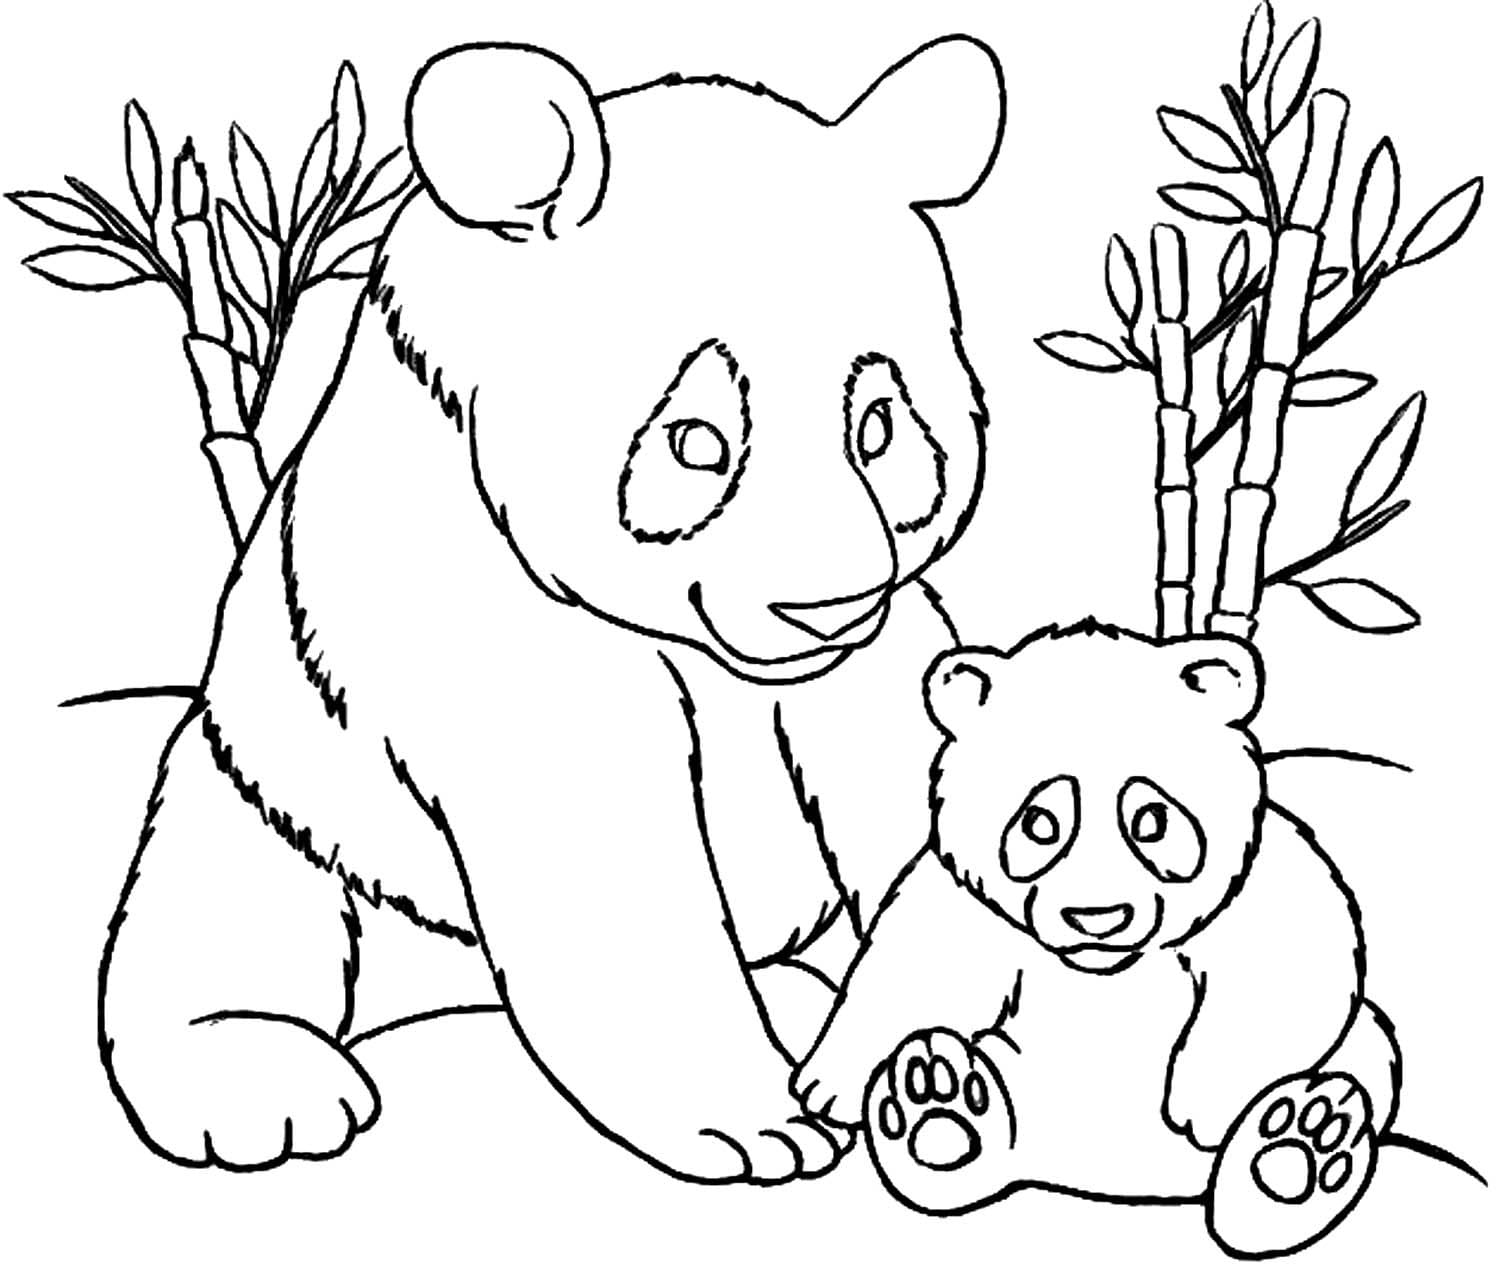 Dibujos de Panda para colorear - 100 imágenes para imprimir gratis